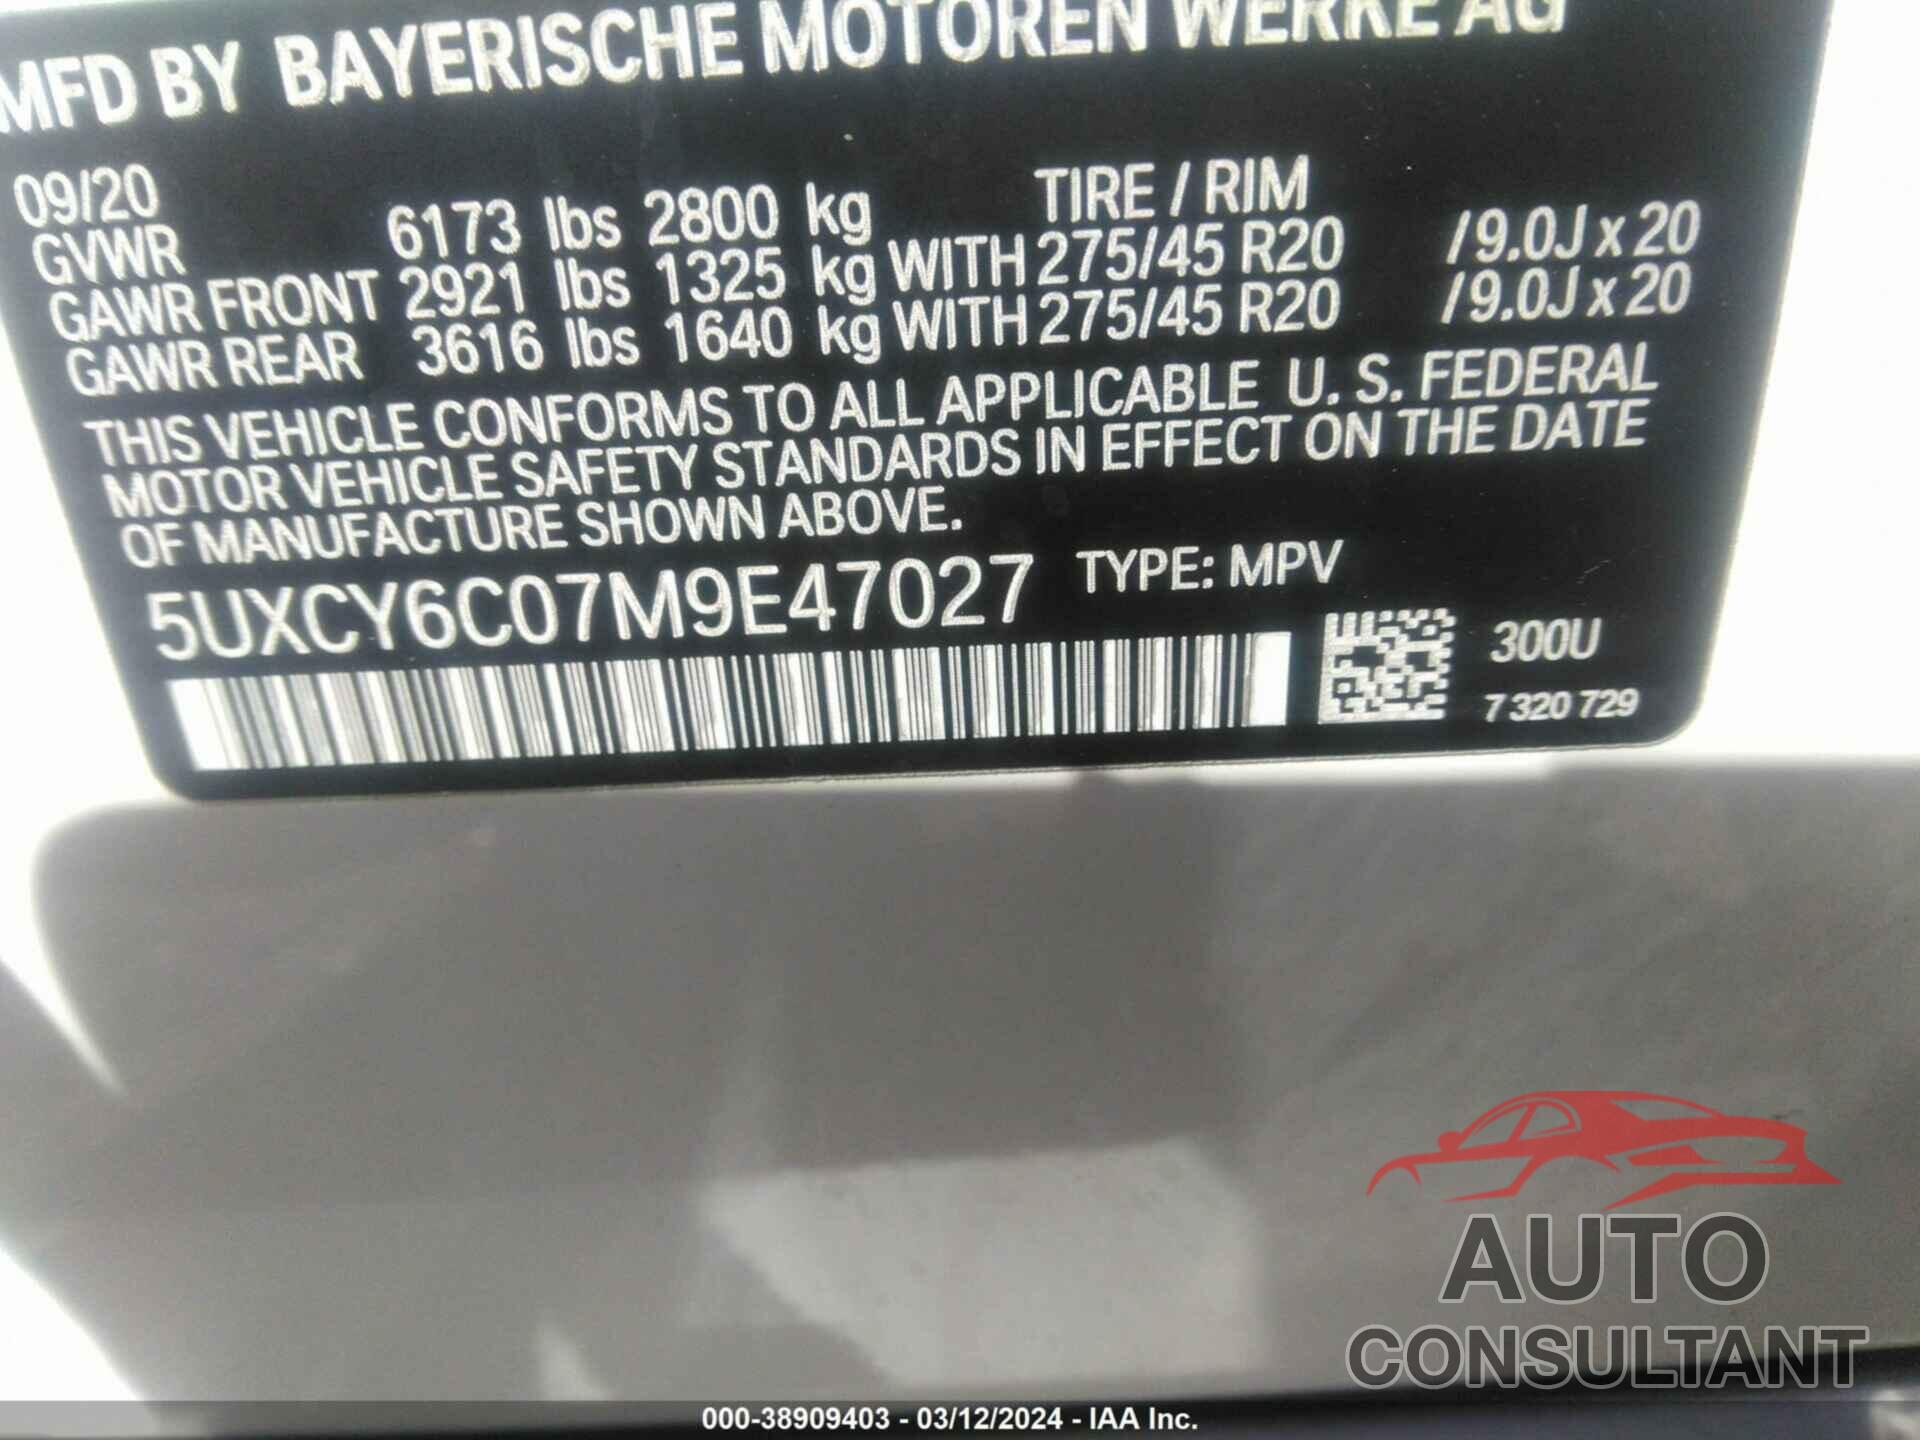 BMW X6 2021 - 5UXCY6C07M9E47027